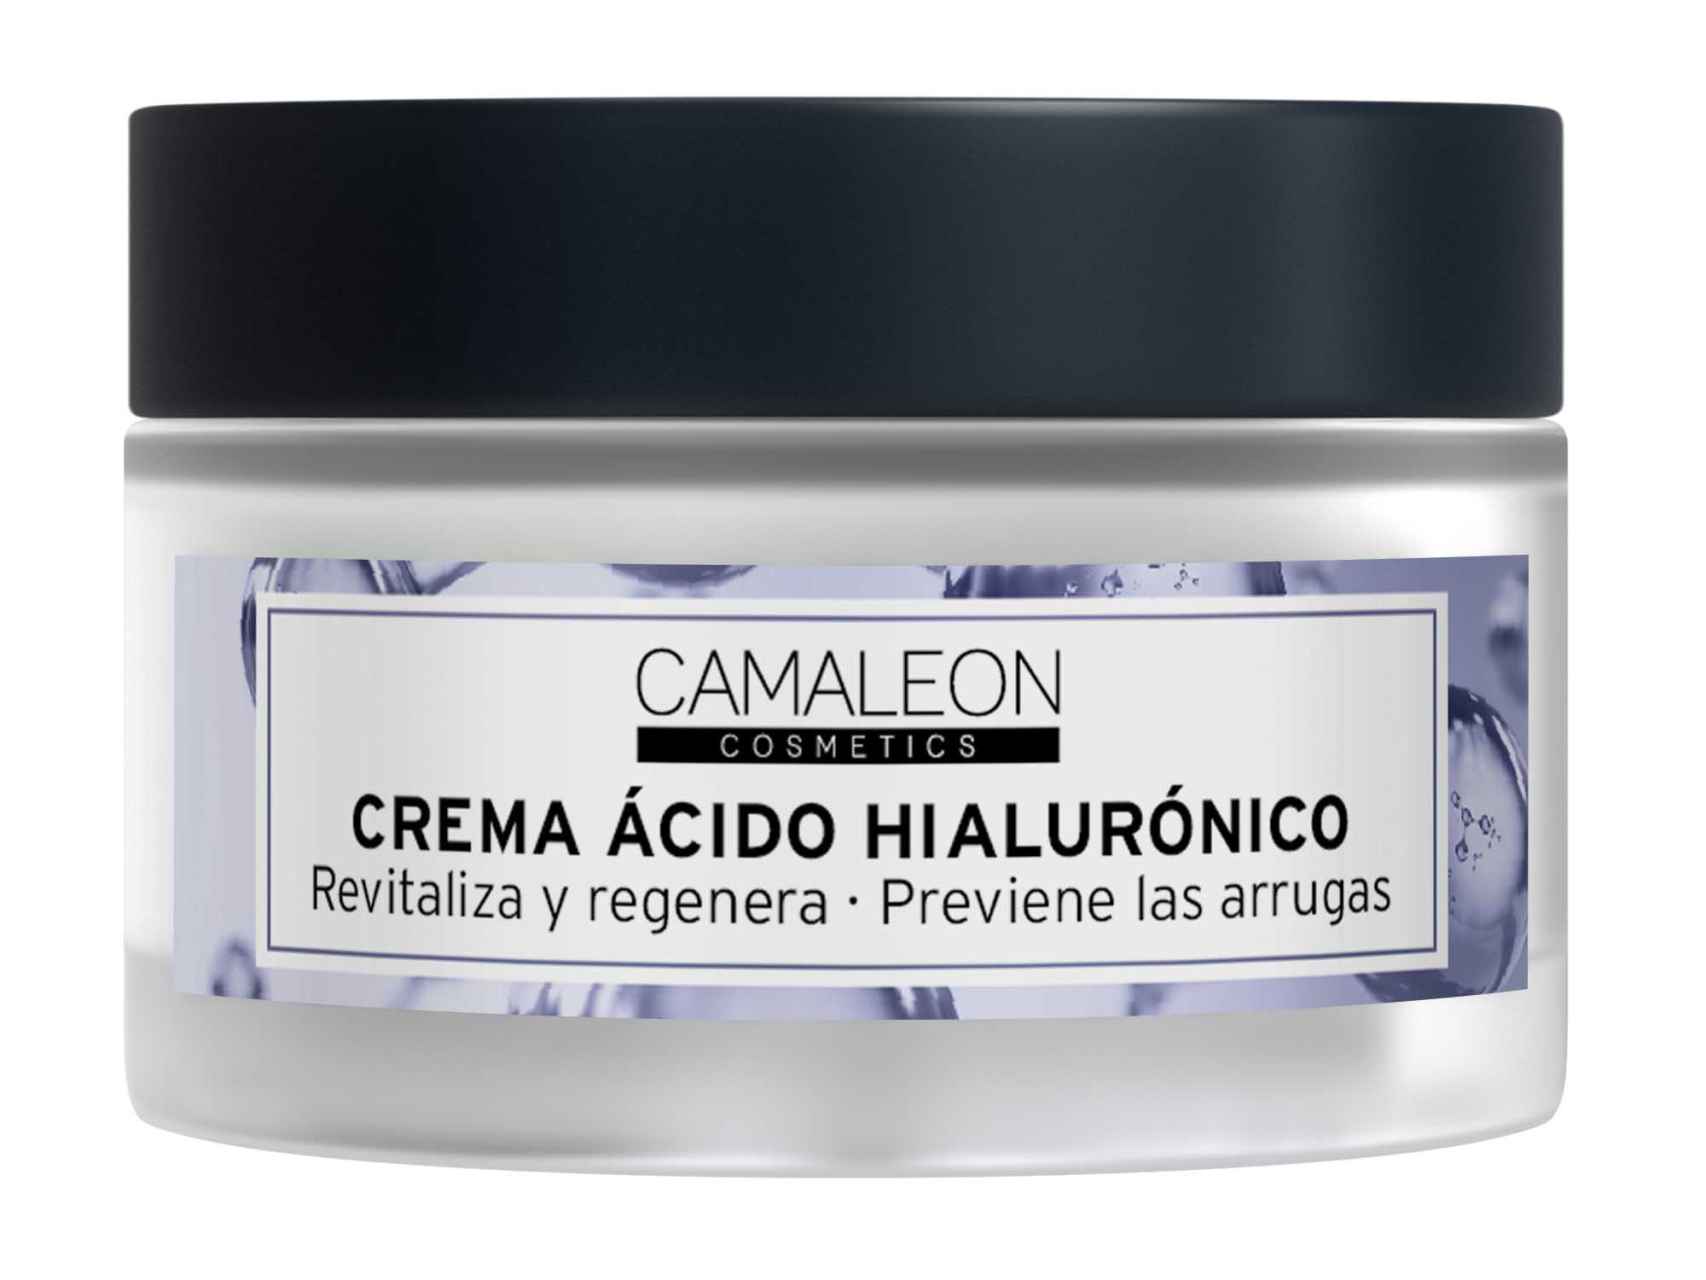 Crema ácido hialurónico de Camaleon Cosmetics.